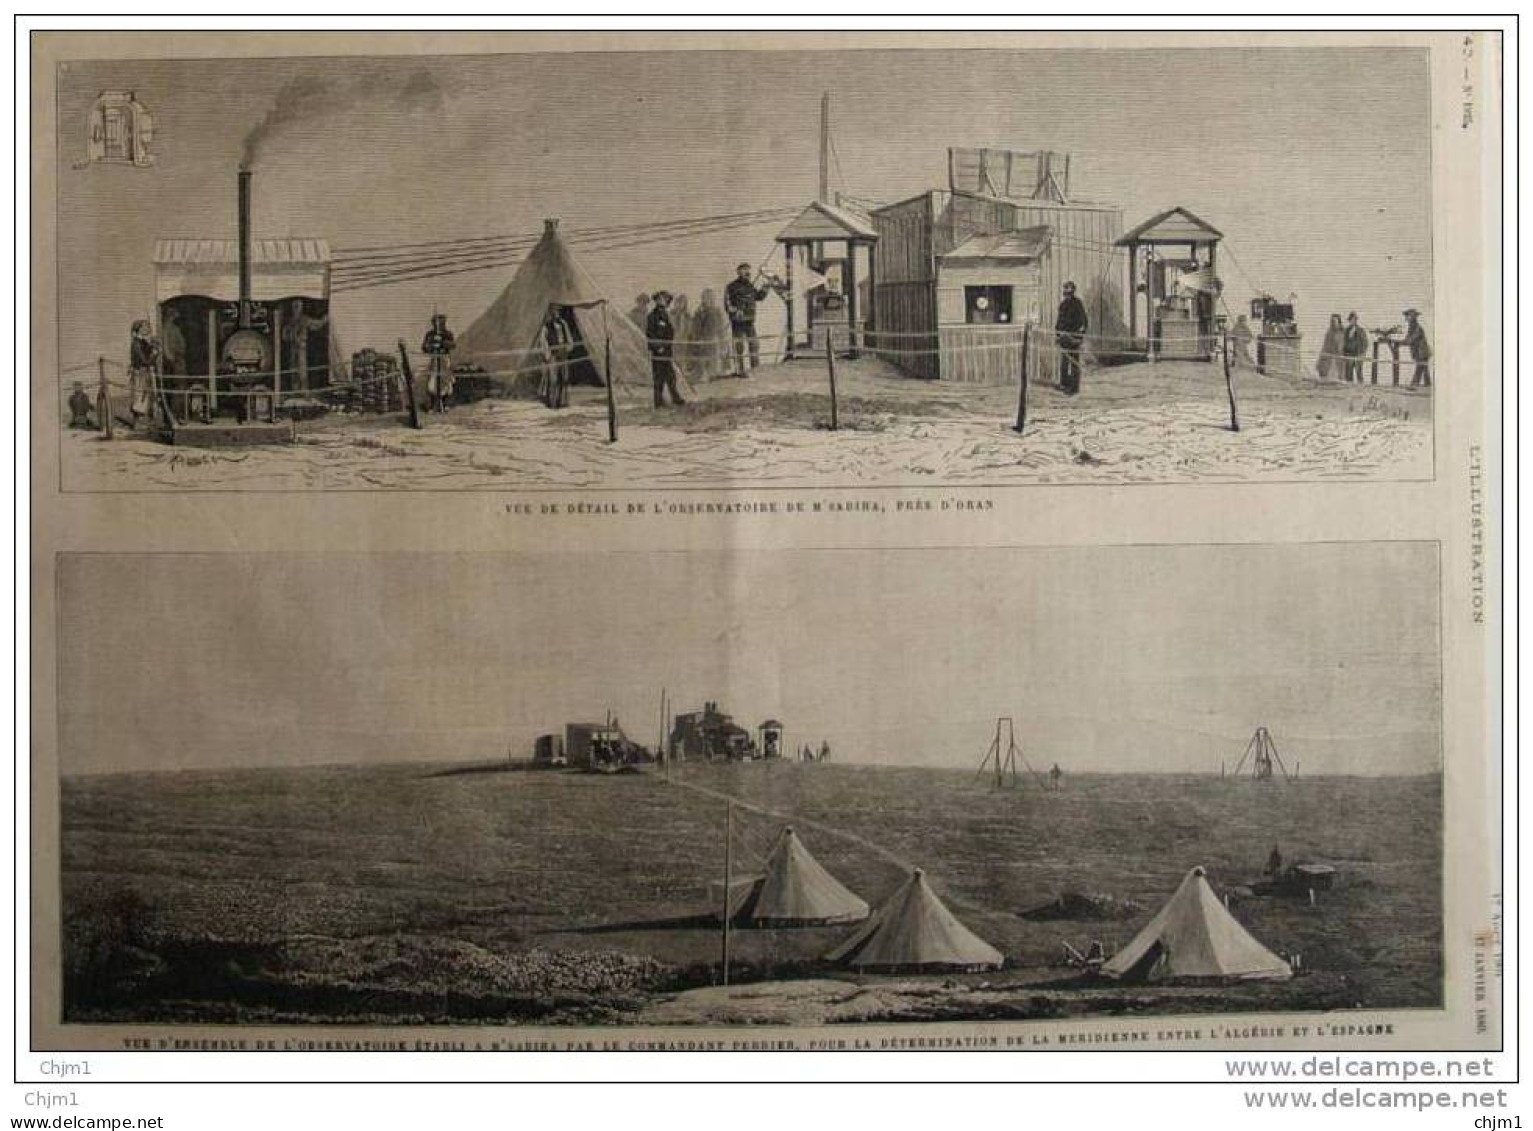 Observatoire De M&acute;Sabiha Près D&acute;Oran - Page Original - 1880 - Historische Documenten